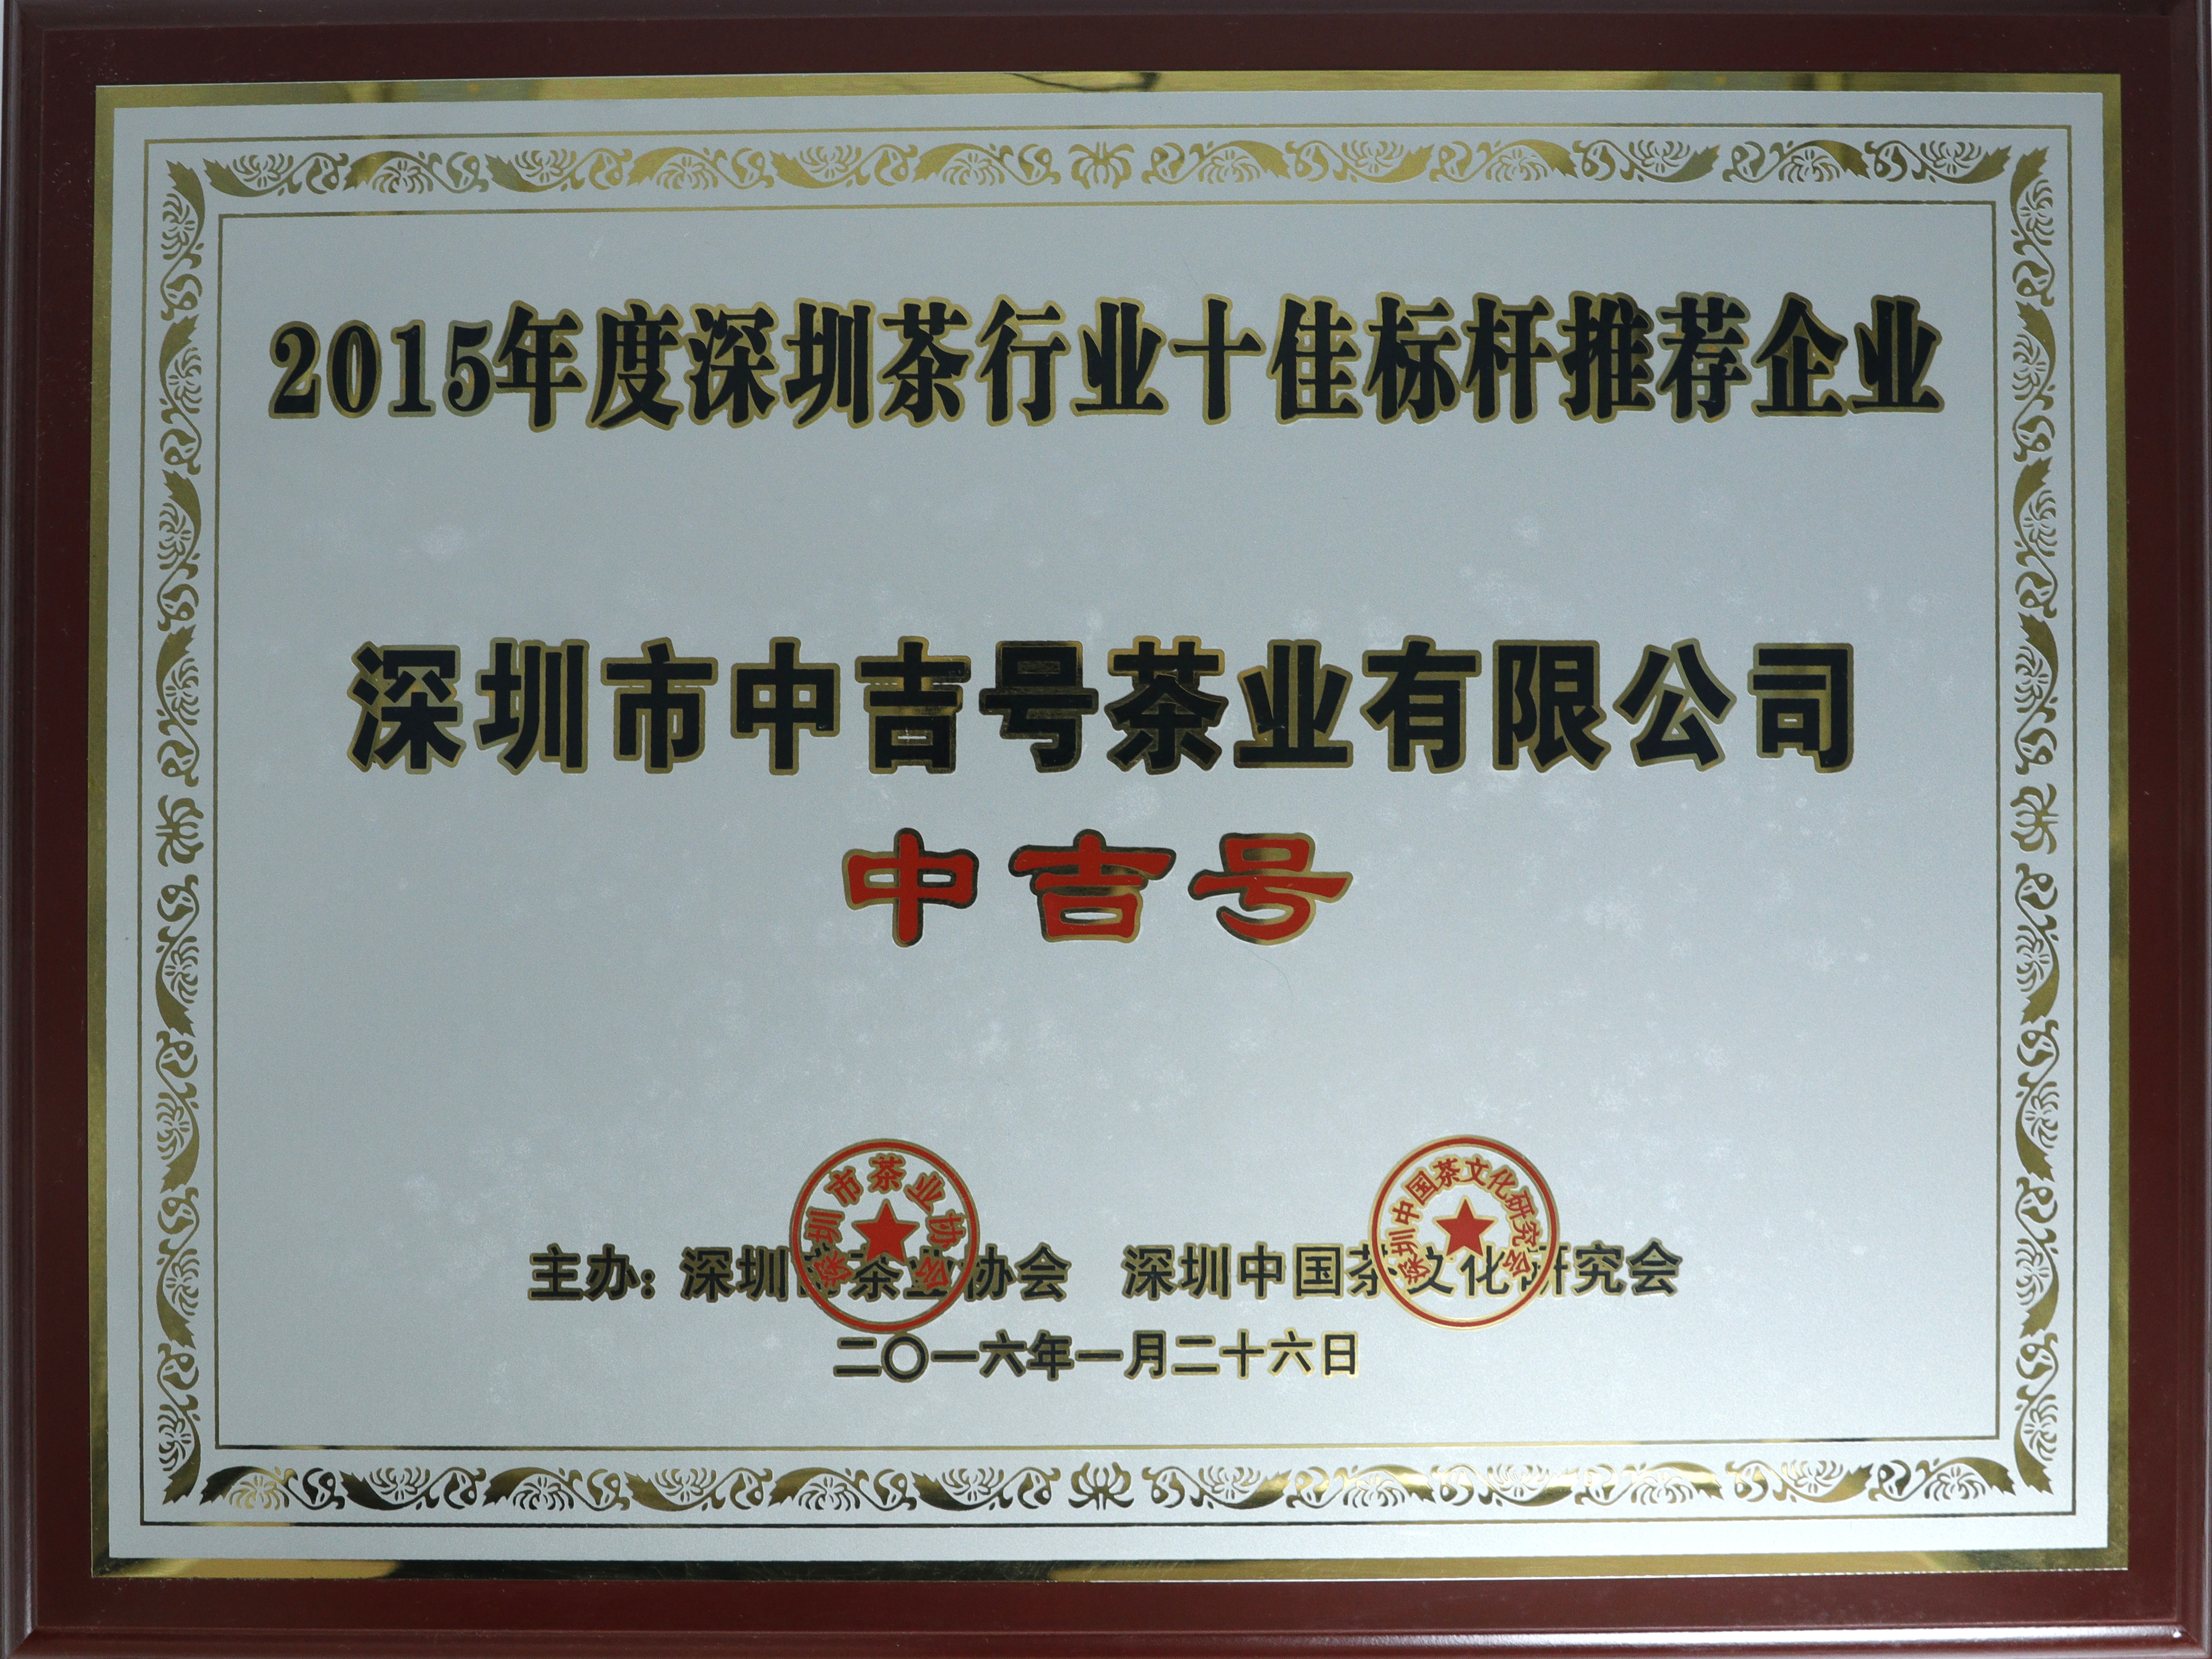 中吉号荣获“2015年度深圳市茶行业十佳标杆推荐企业”